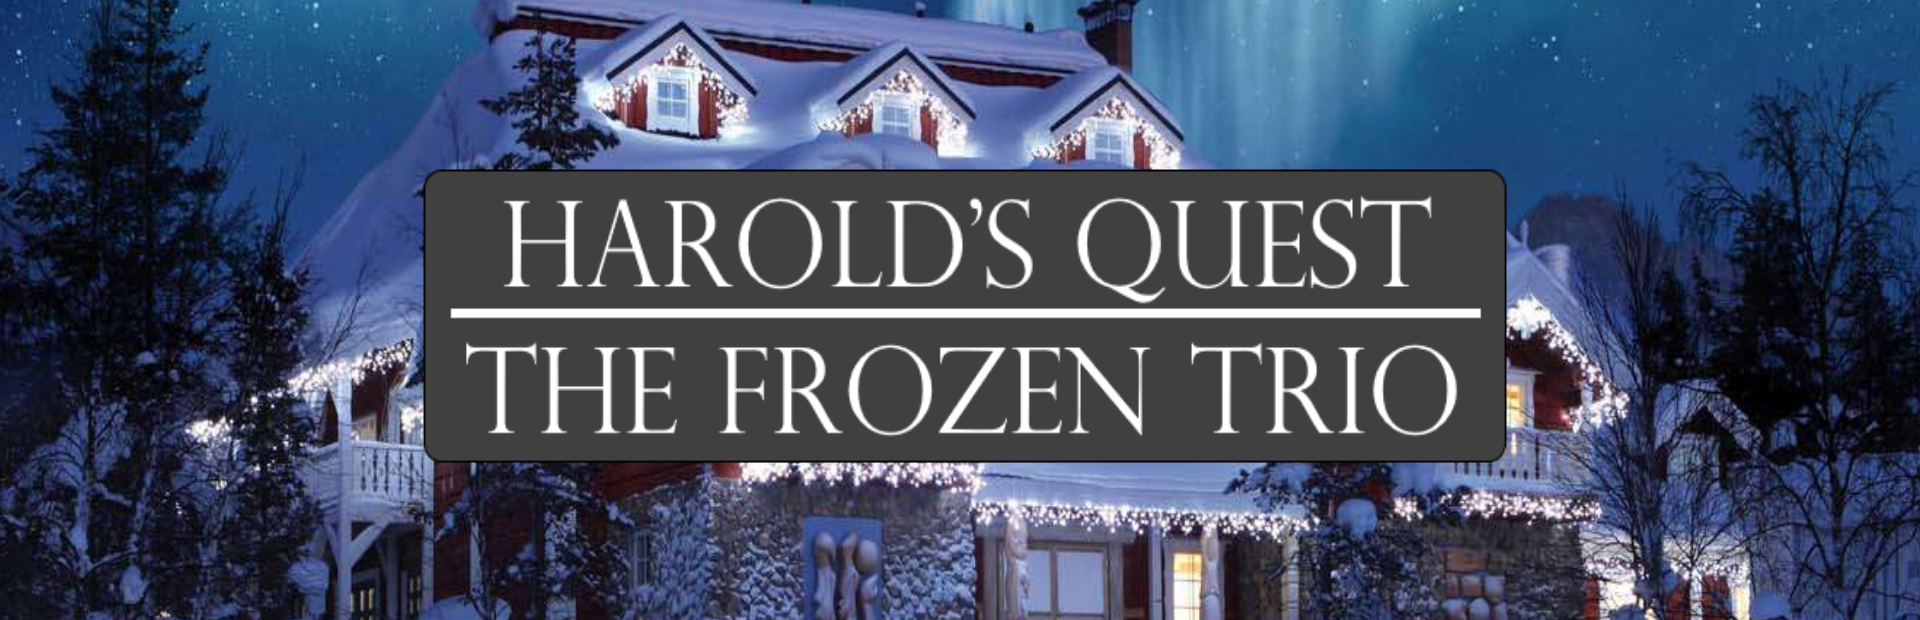 Harold's Quest - The Frozen Trio